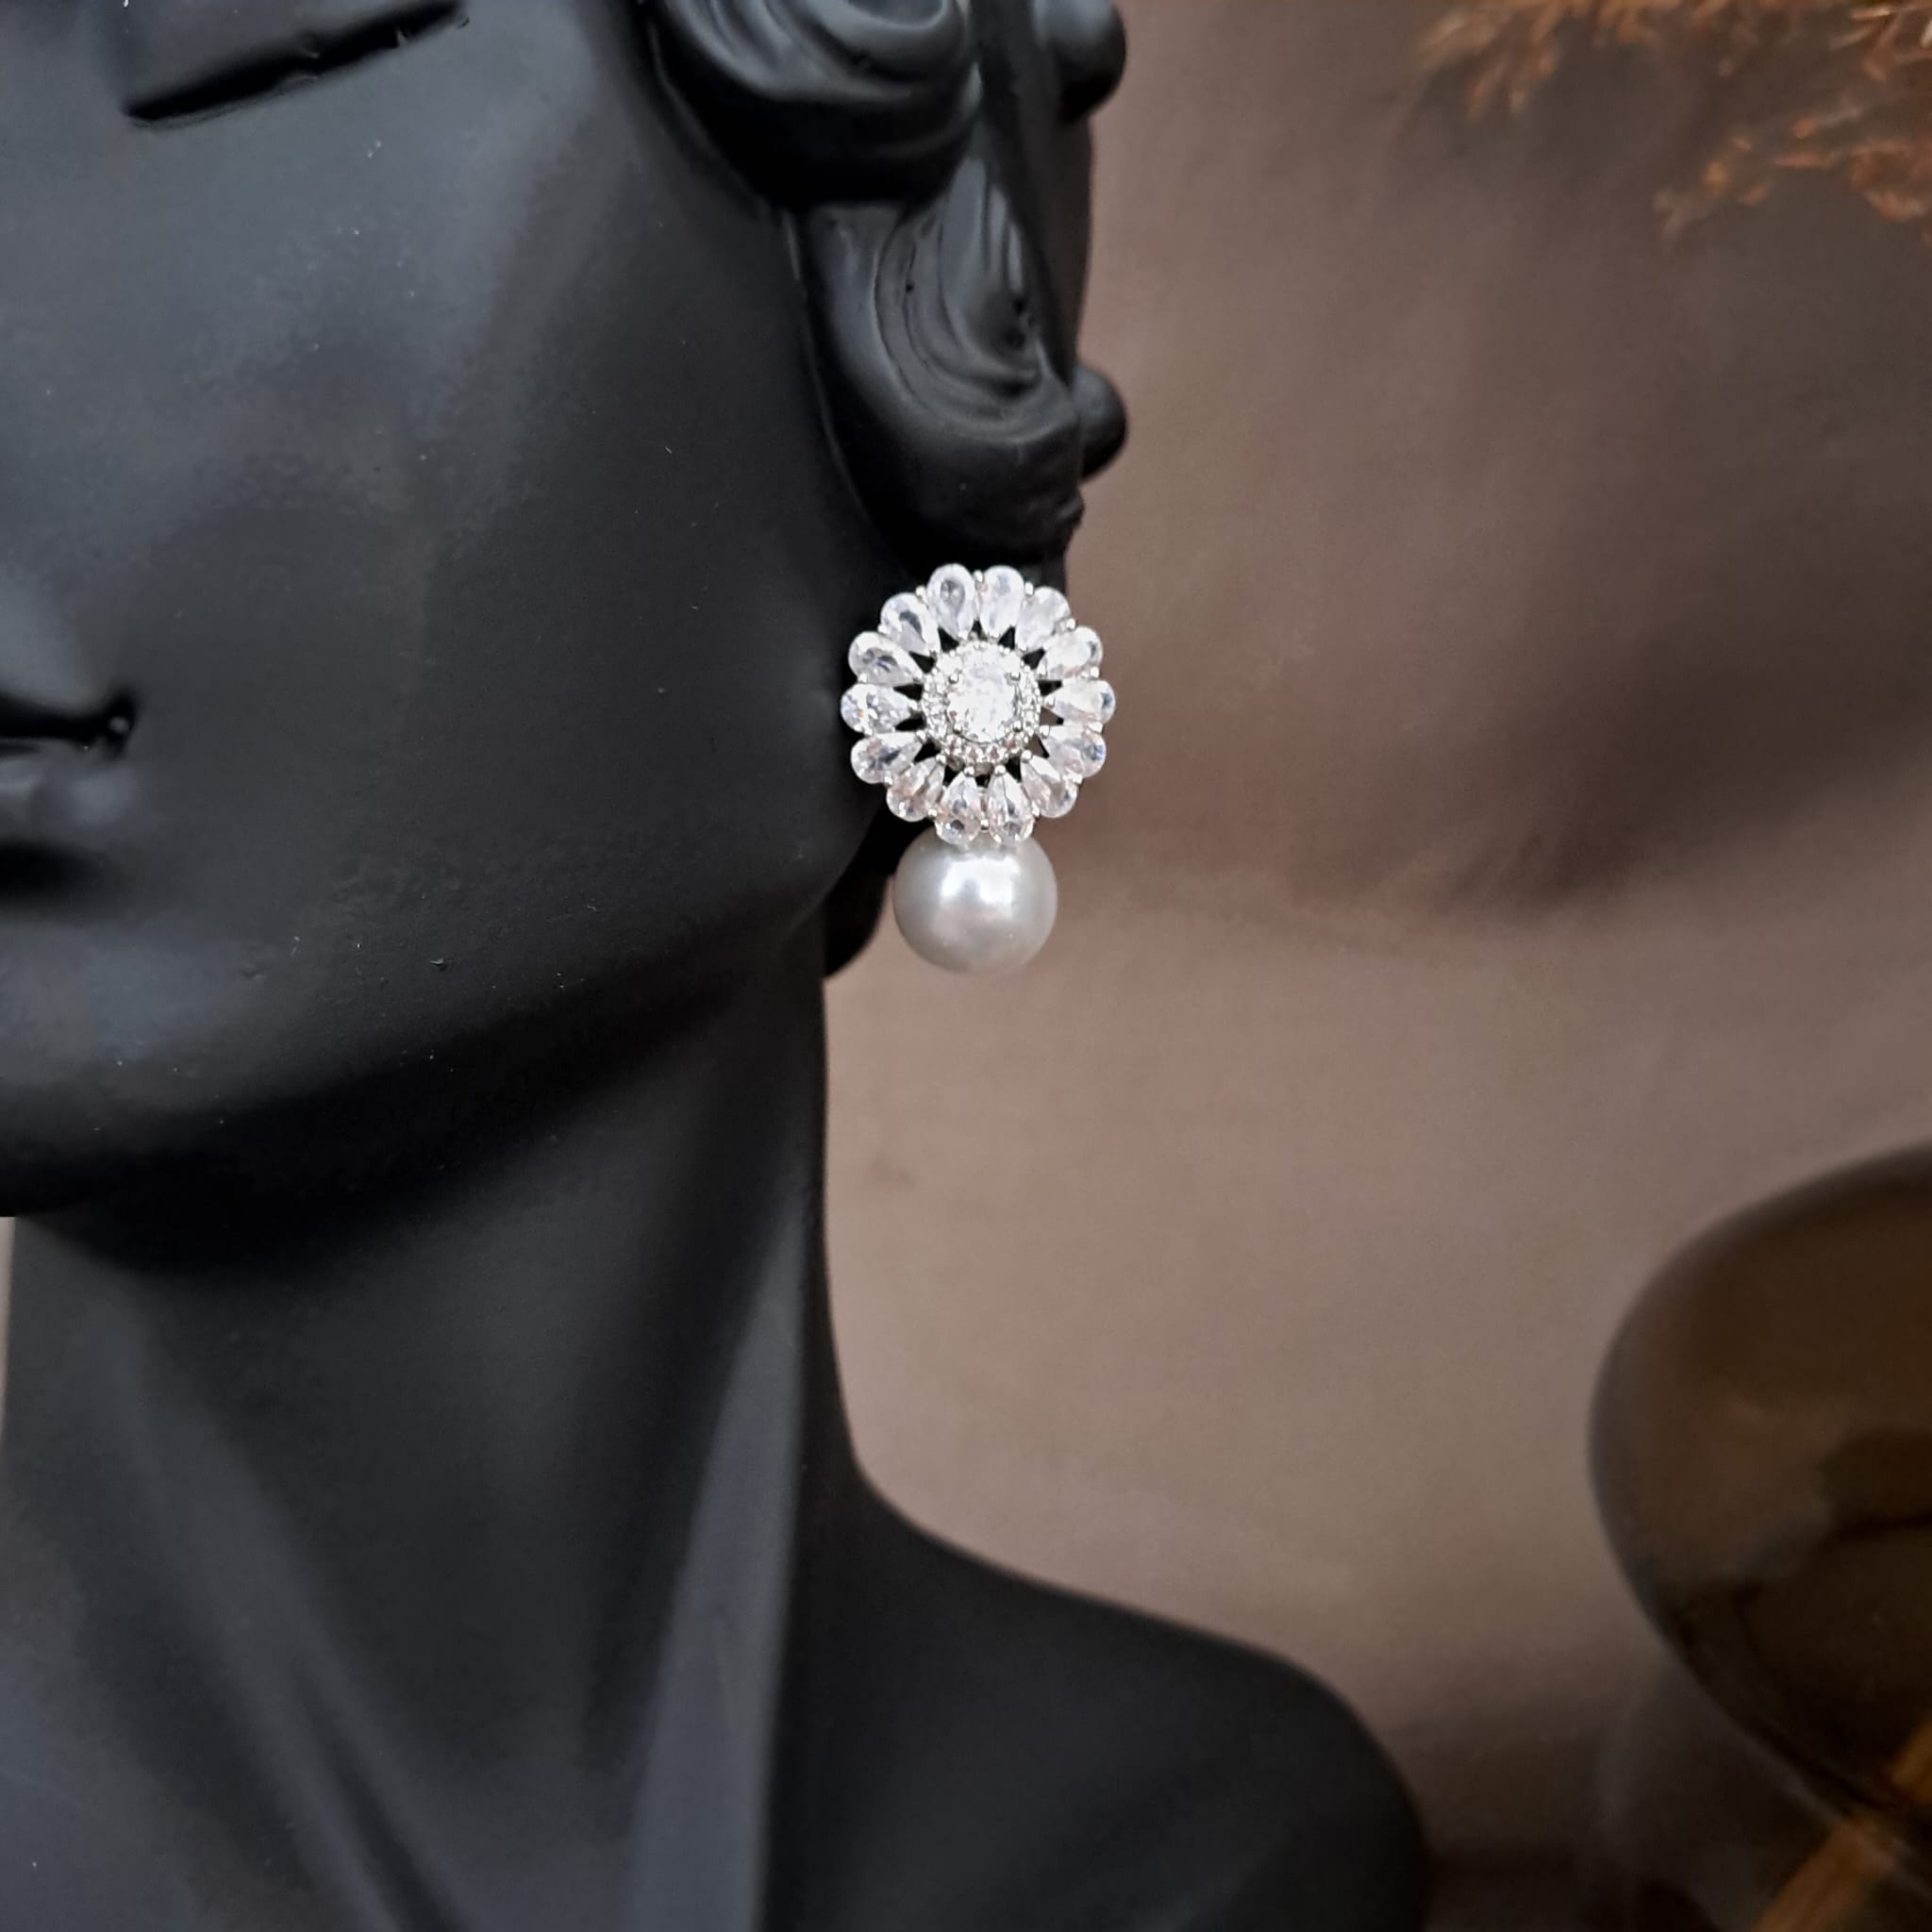 Cercei argintii, cu perla si pietre din zirconiu, Tiana C19